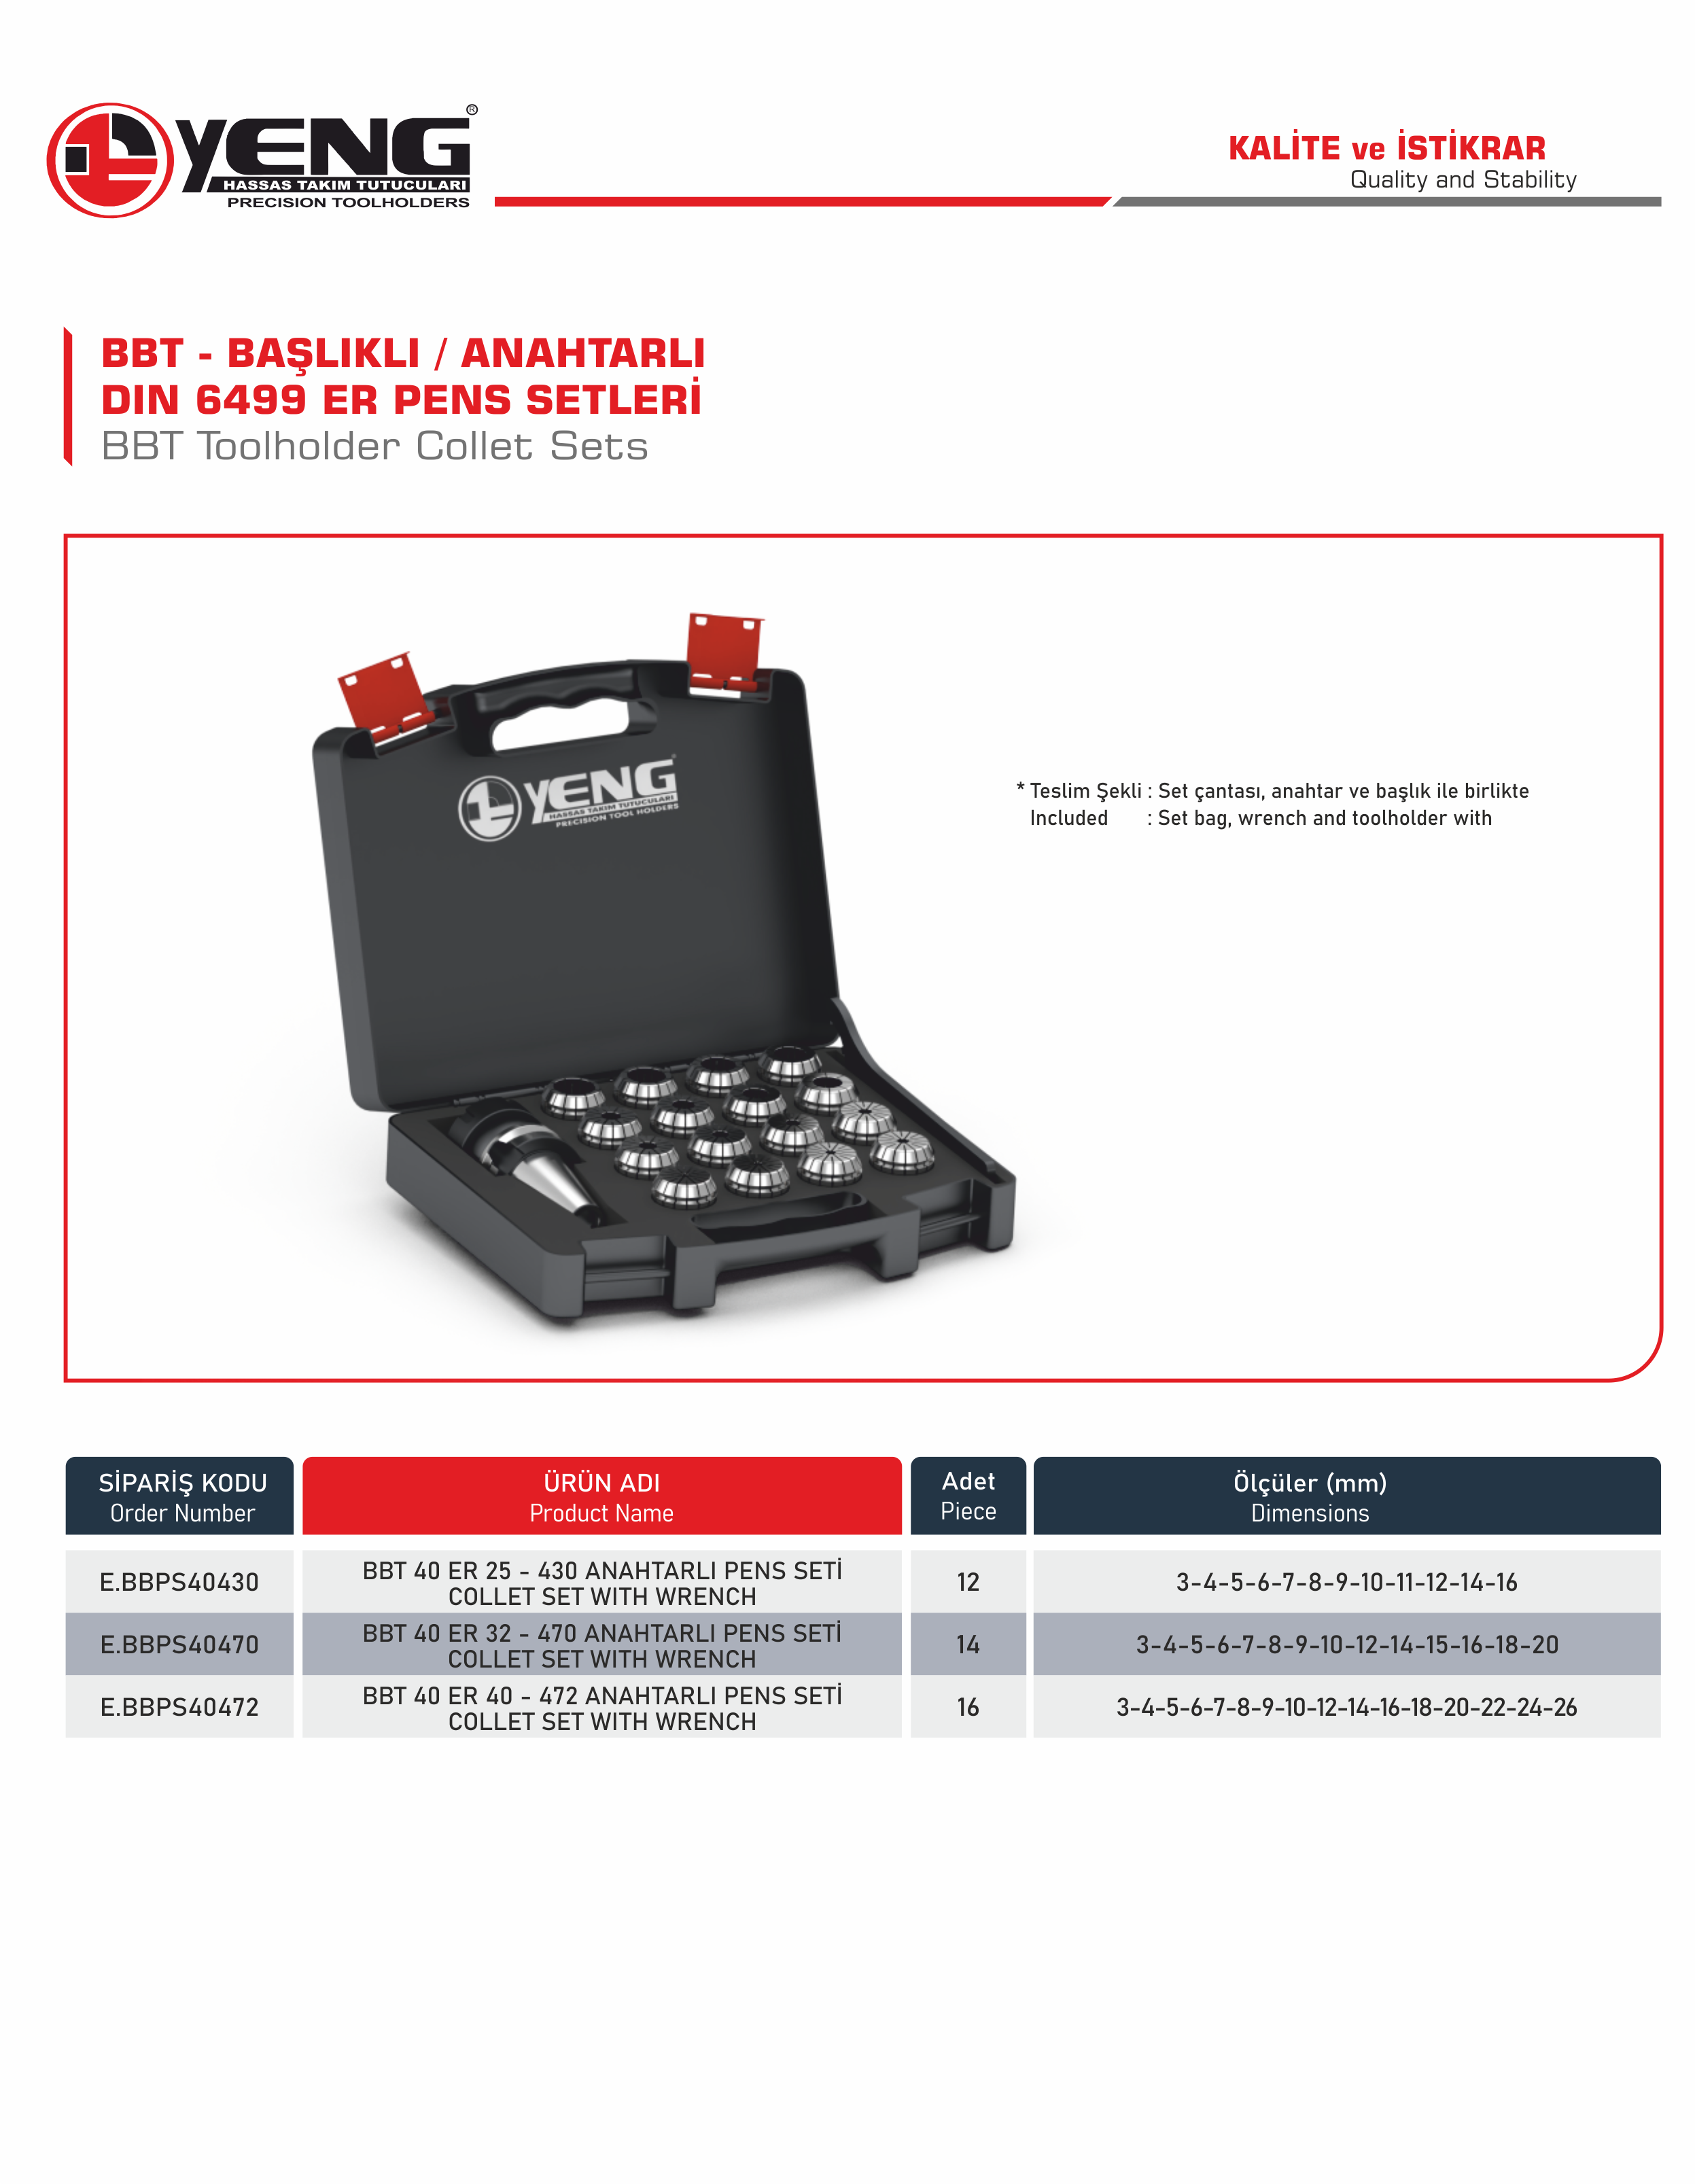 BBT Başlıklı - Anahtarlı Pens Setleri / DIN 6499 ER